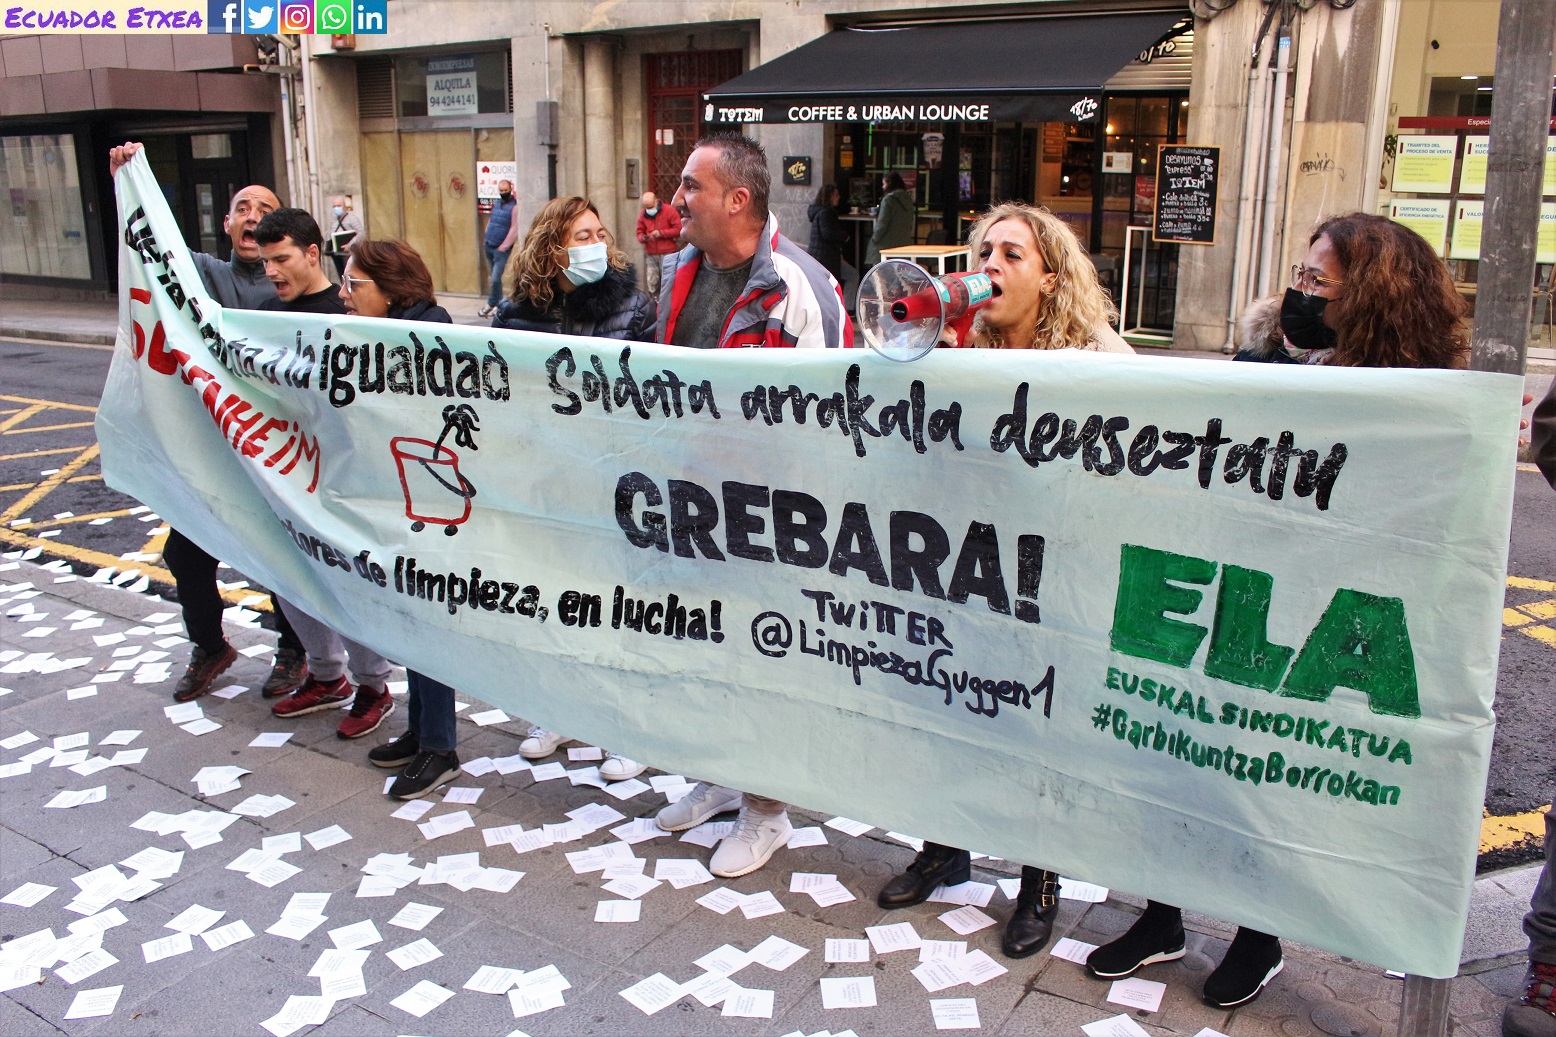 Museo-Guggenheim-Bilbao-limpiadoras-limpieza-mujeres-juicio-vulnerar-derecho-huelga-turismo-ela